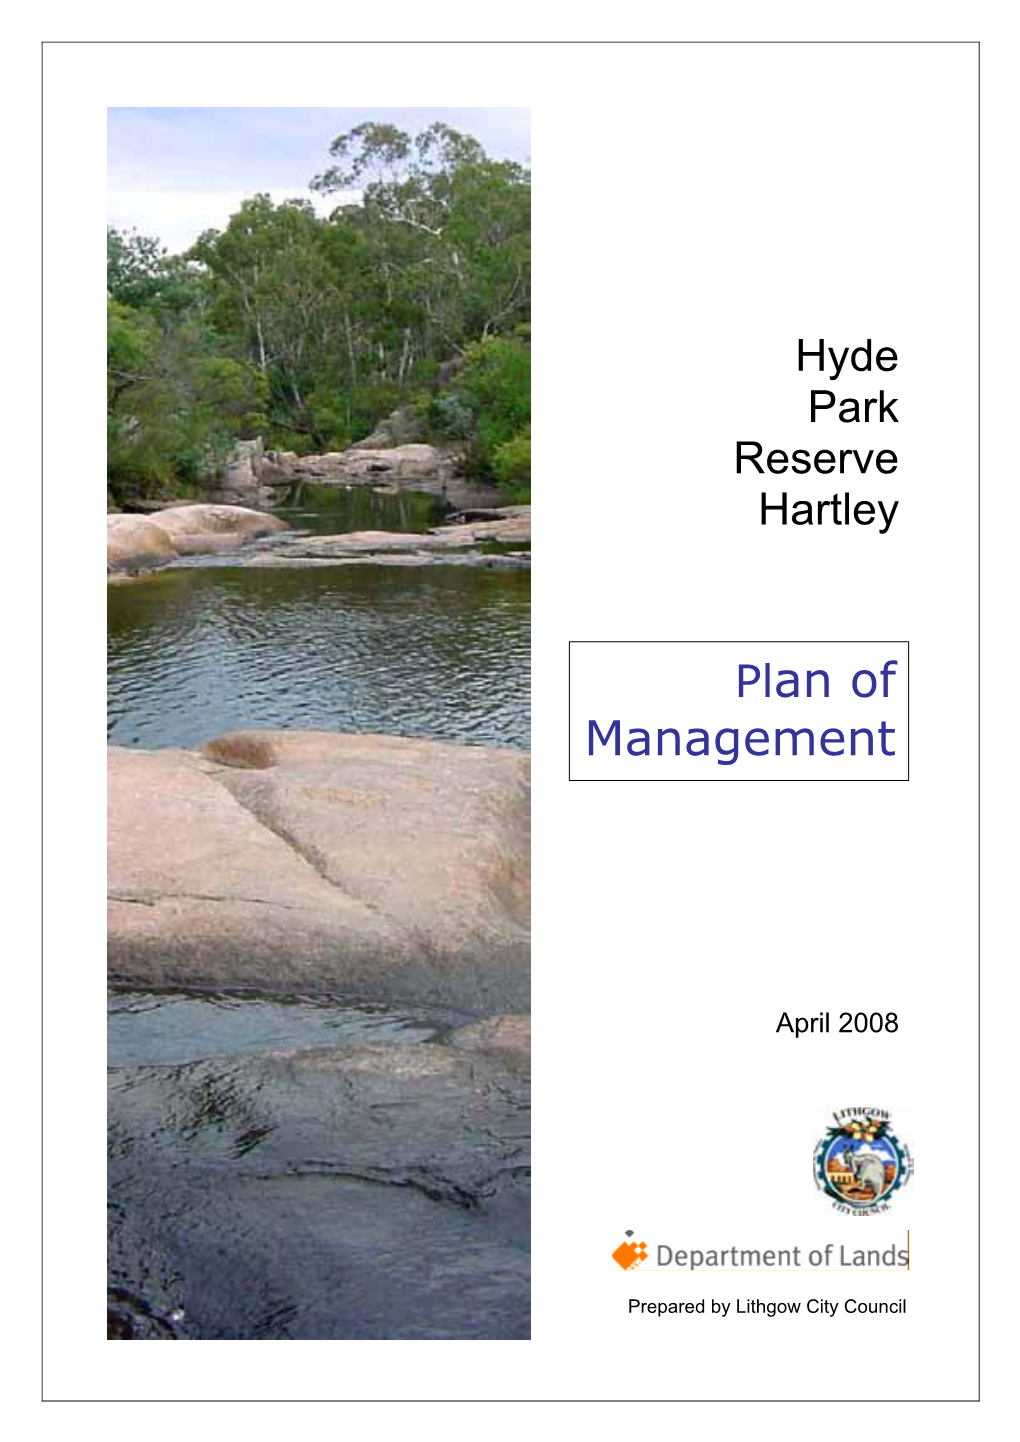 Hyde Park Management Plan